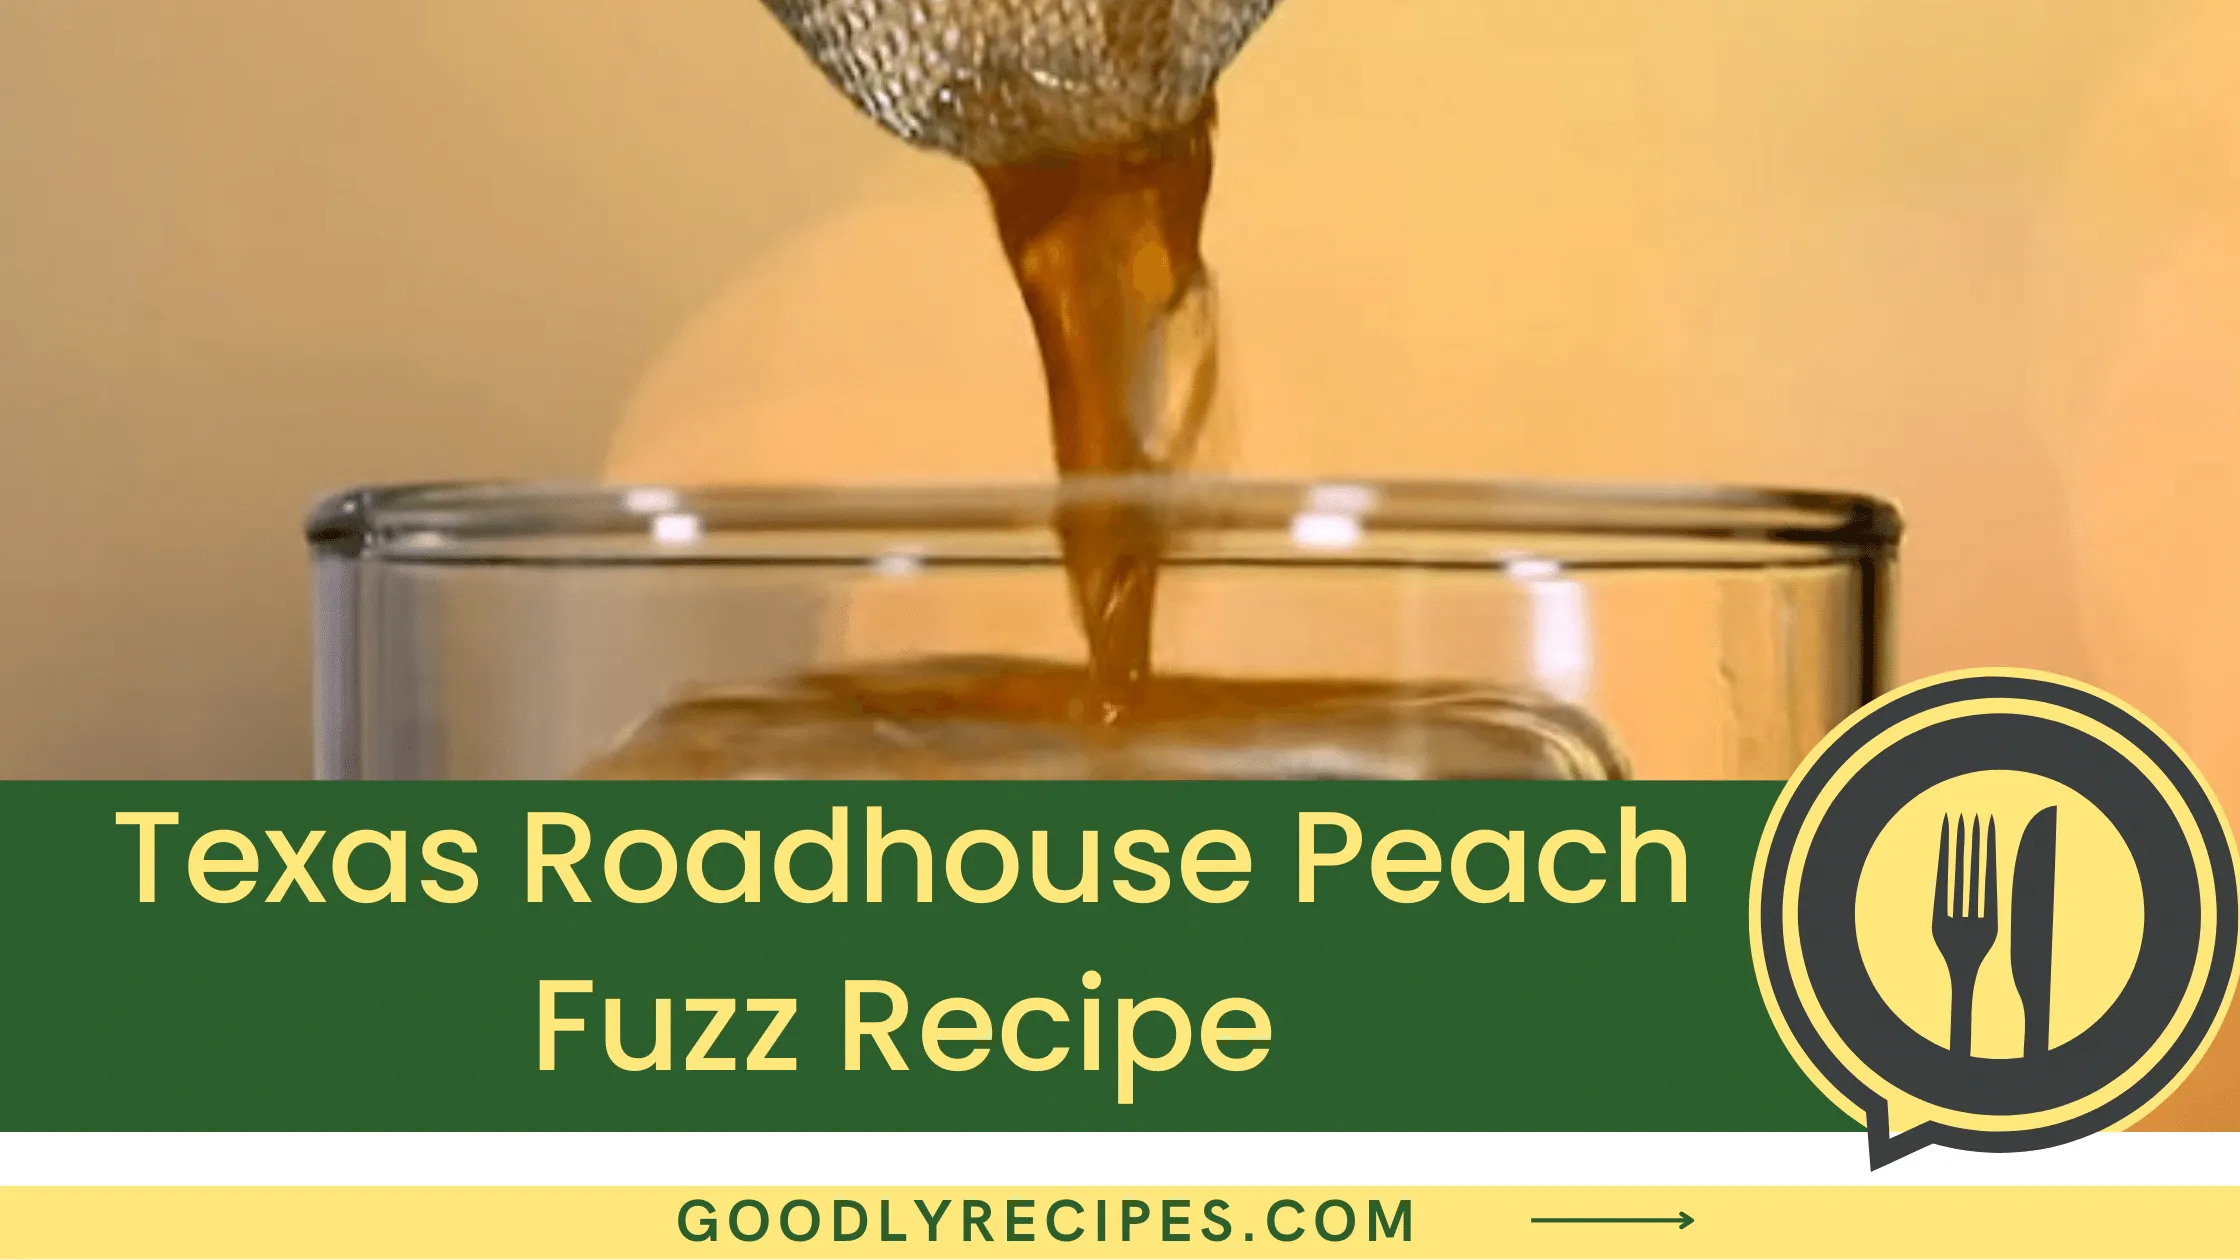 Texas Roadhouse Peach Fuzz Recipe